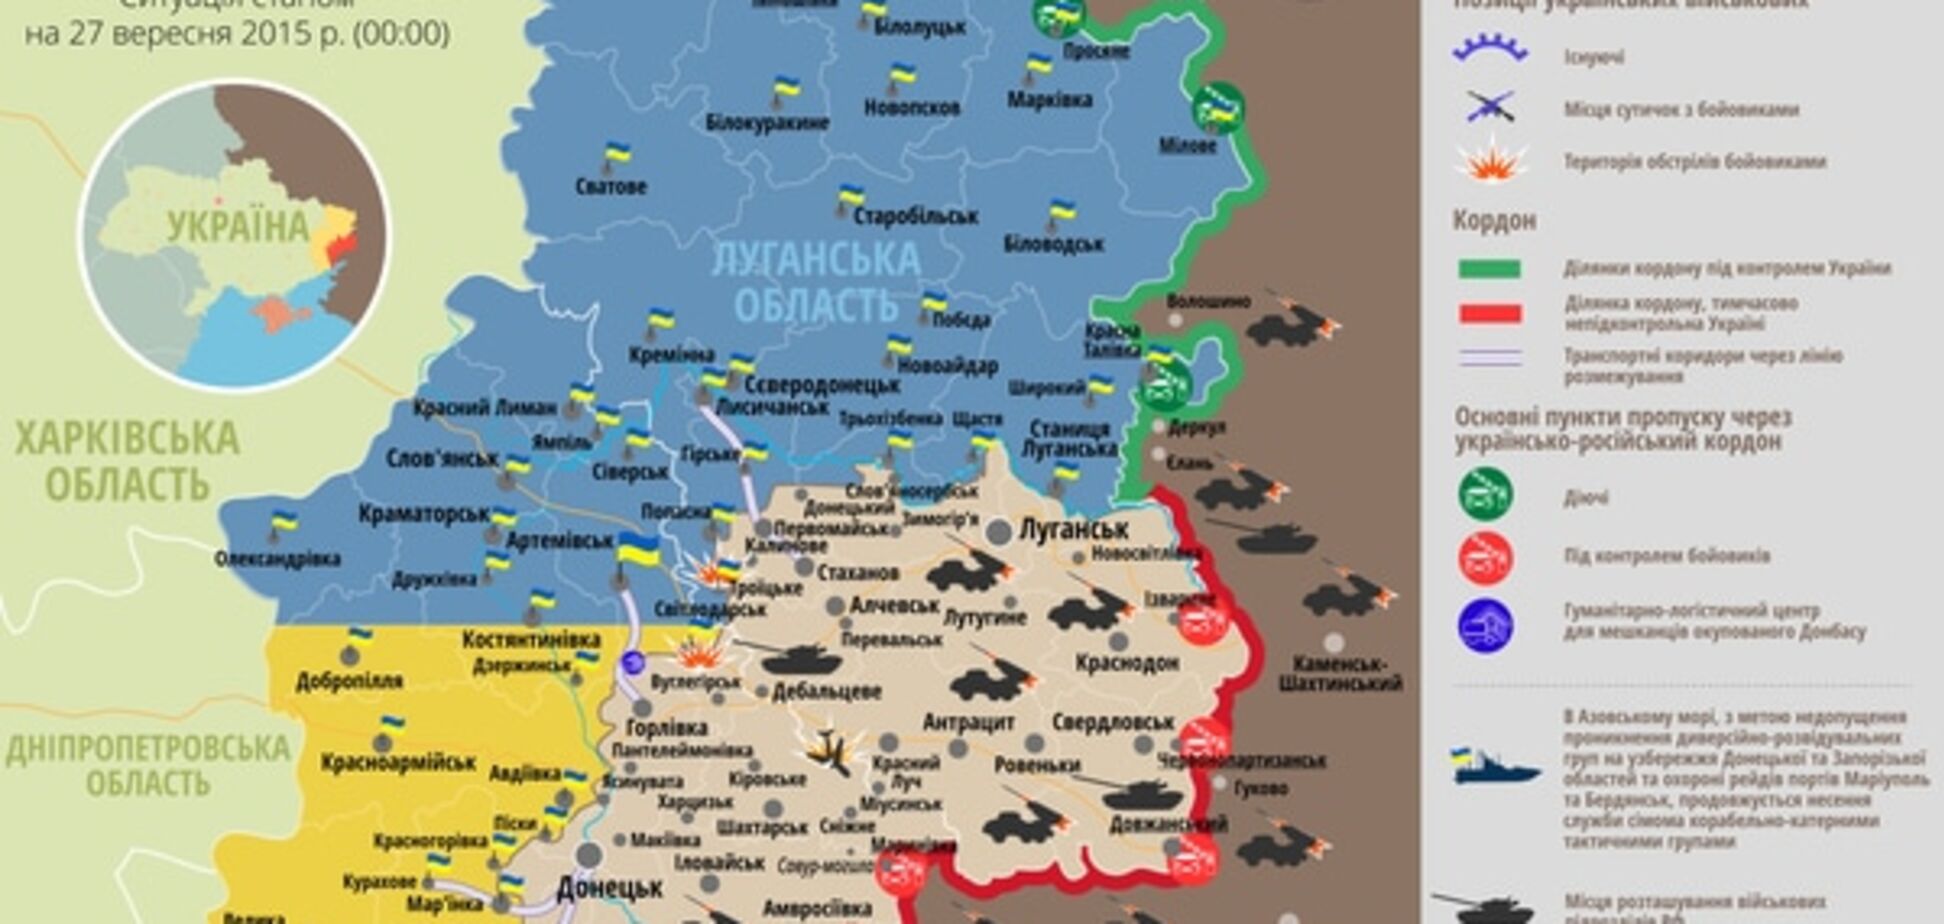 Двое бойцов подорвались на минах близ Горловки: карта АТО